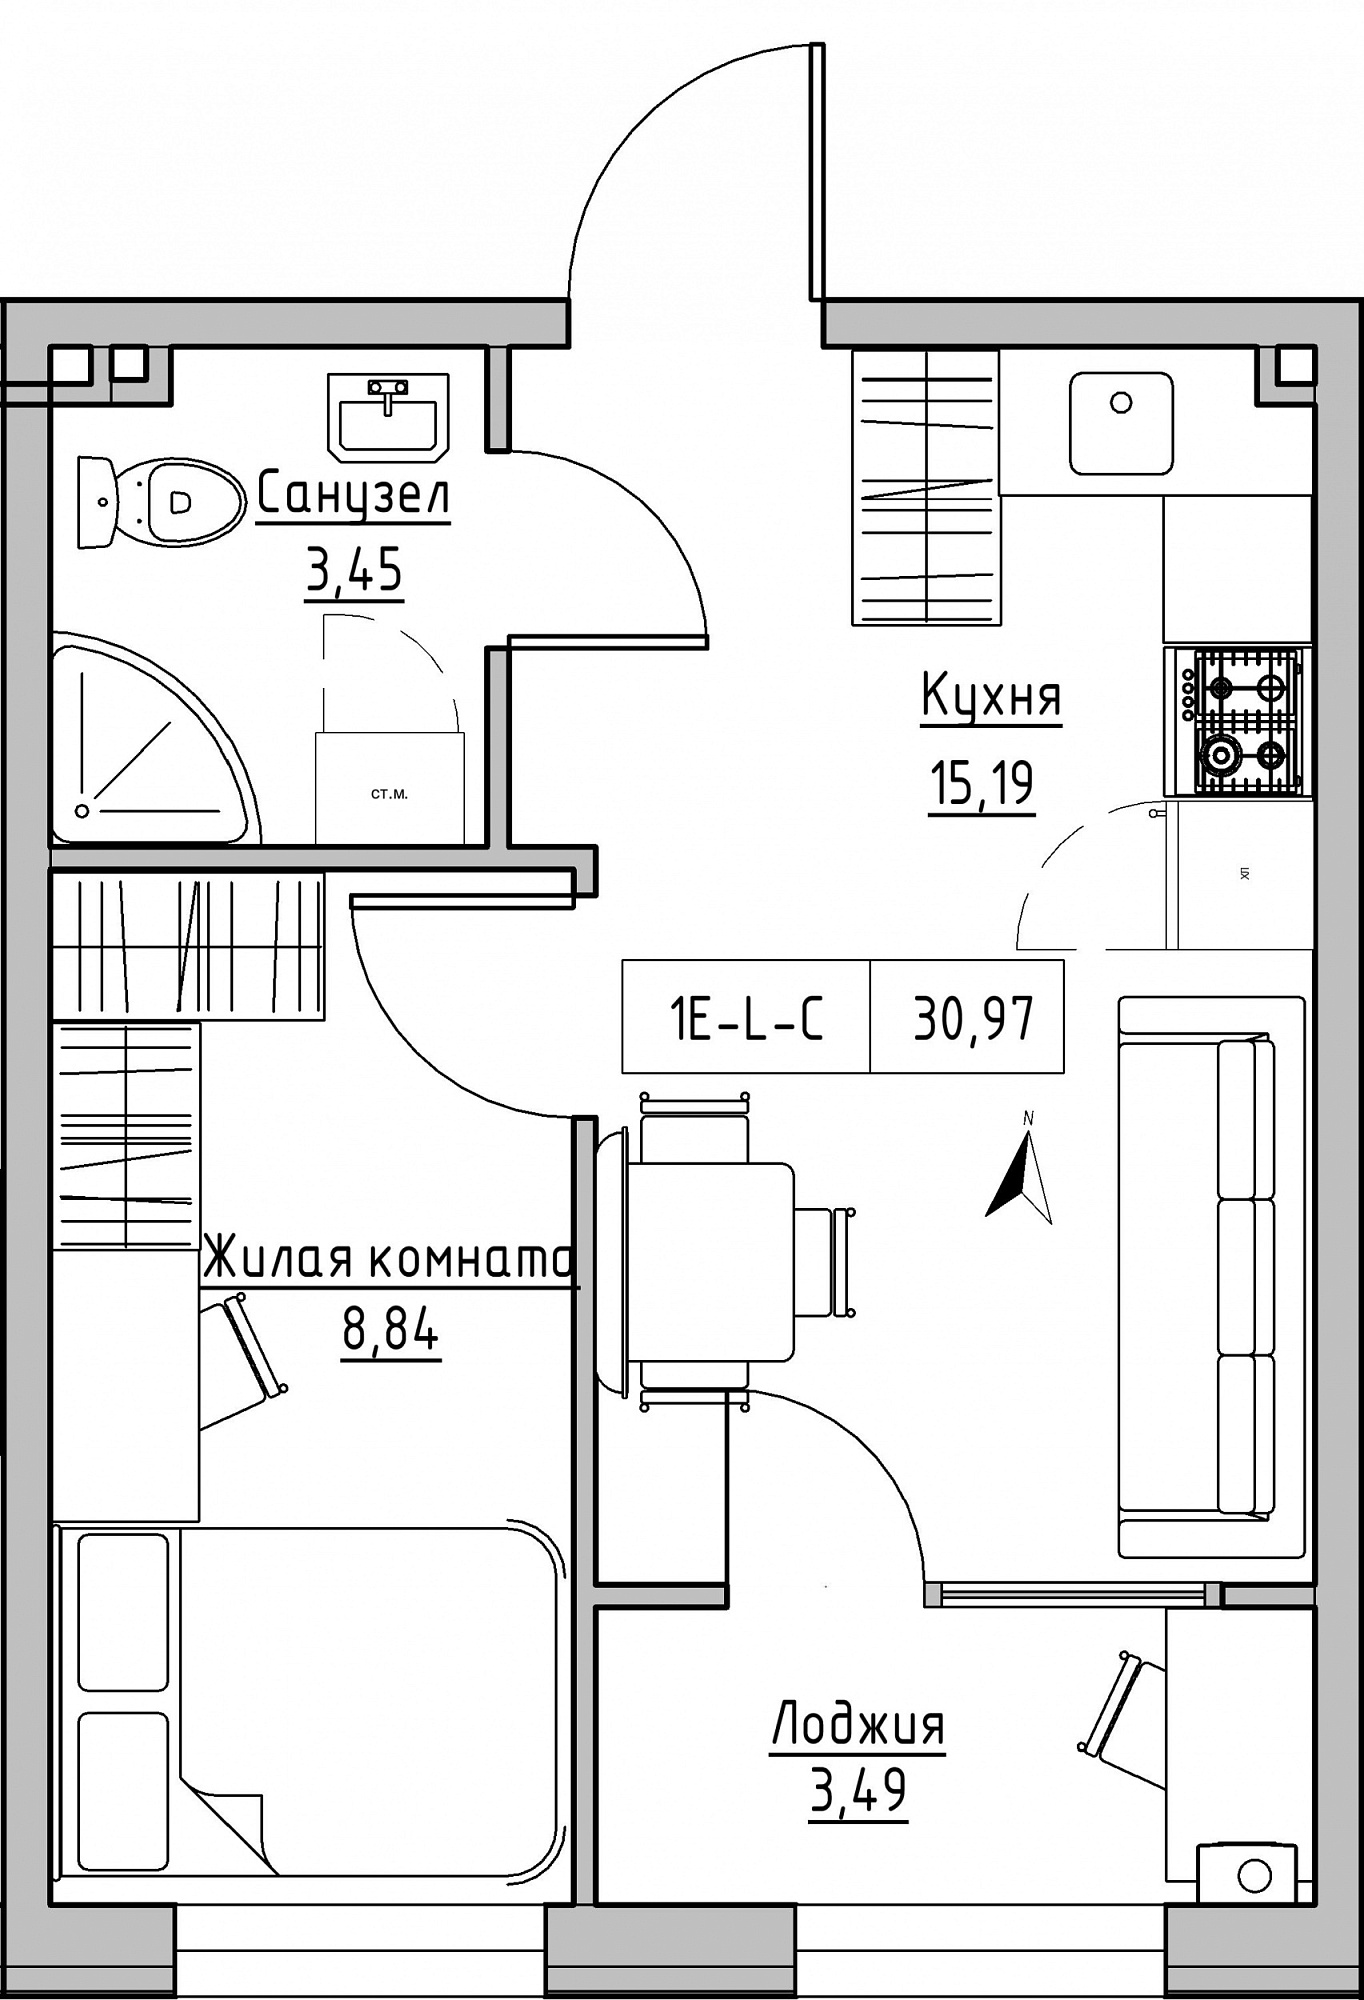 Планування 1-к квартира площею 30.97м2, KS-024-01/0007.